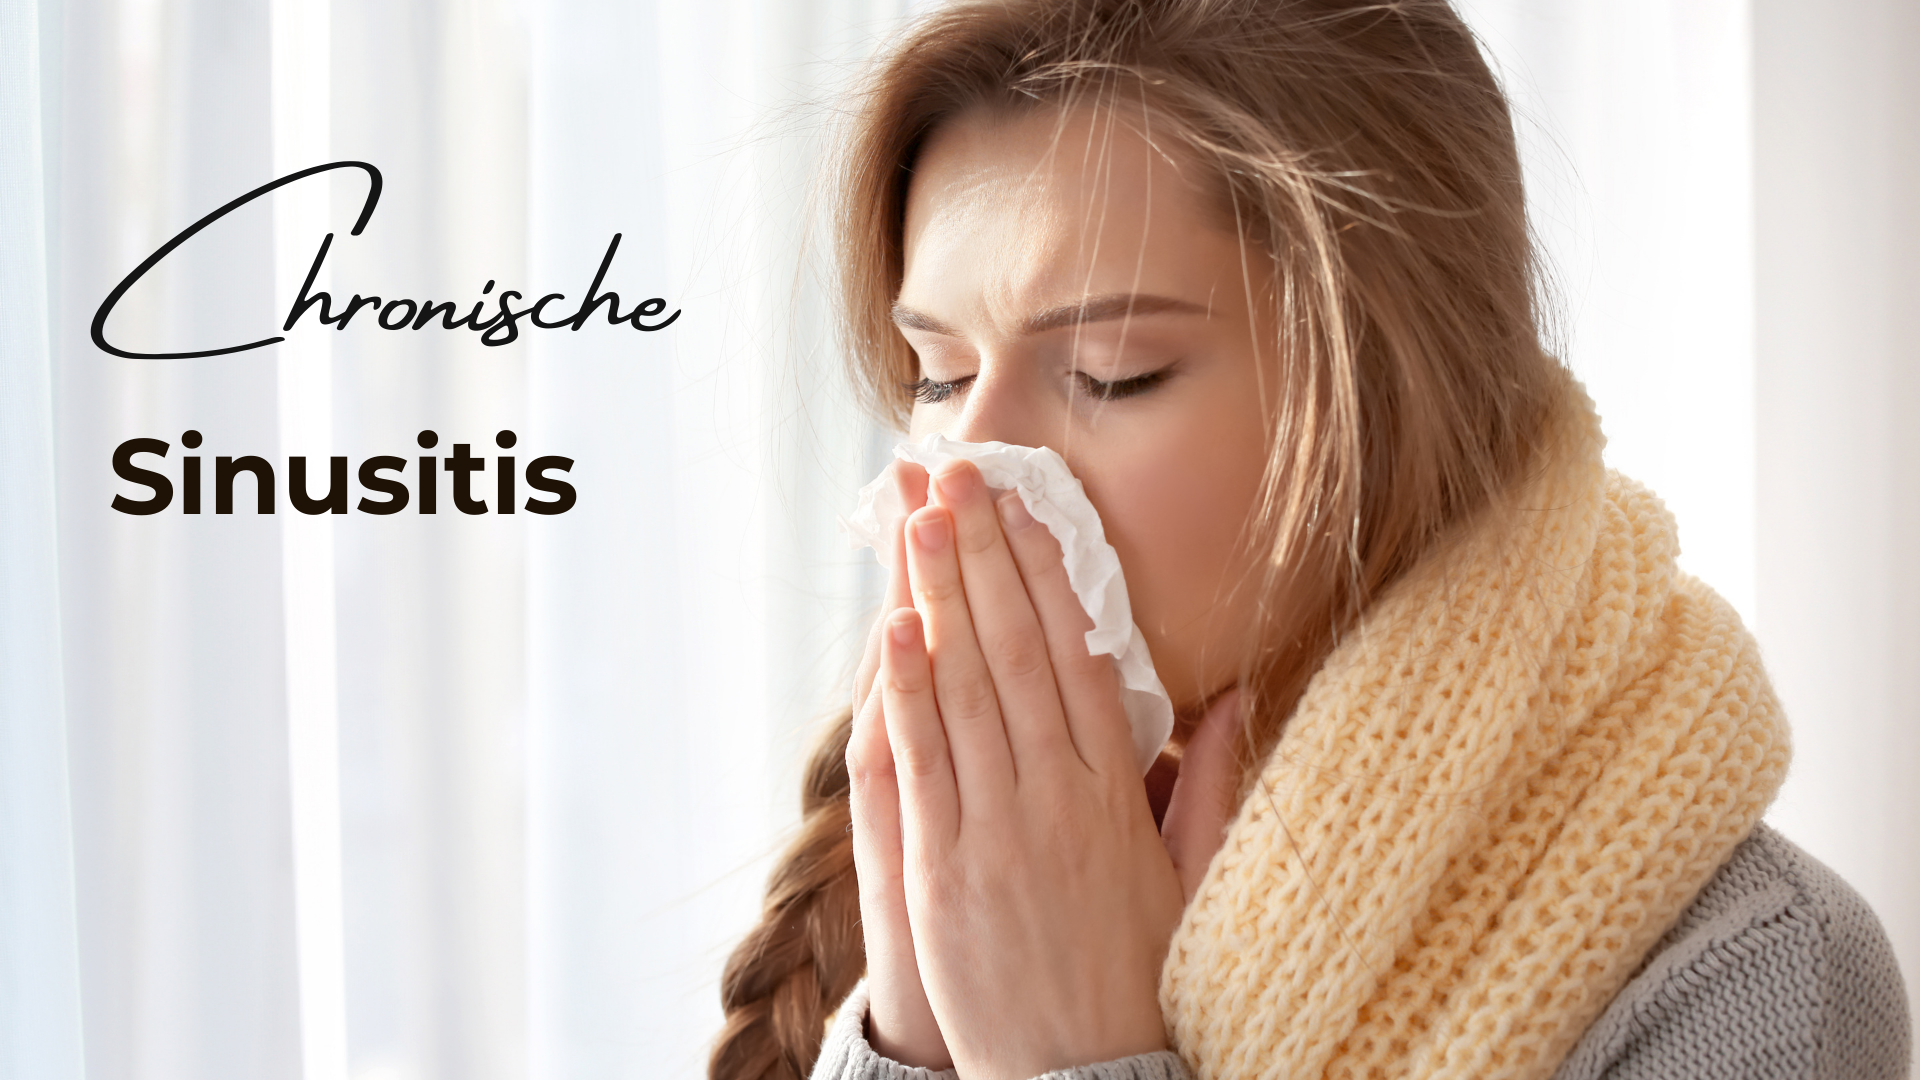 Du betrachtest gerade Sinusitis in Dauerschleife: Die endlos verstopfte Nase